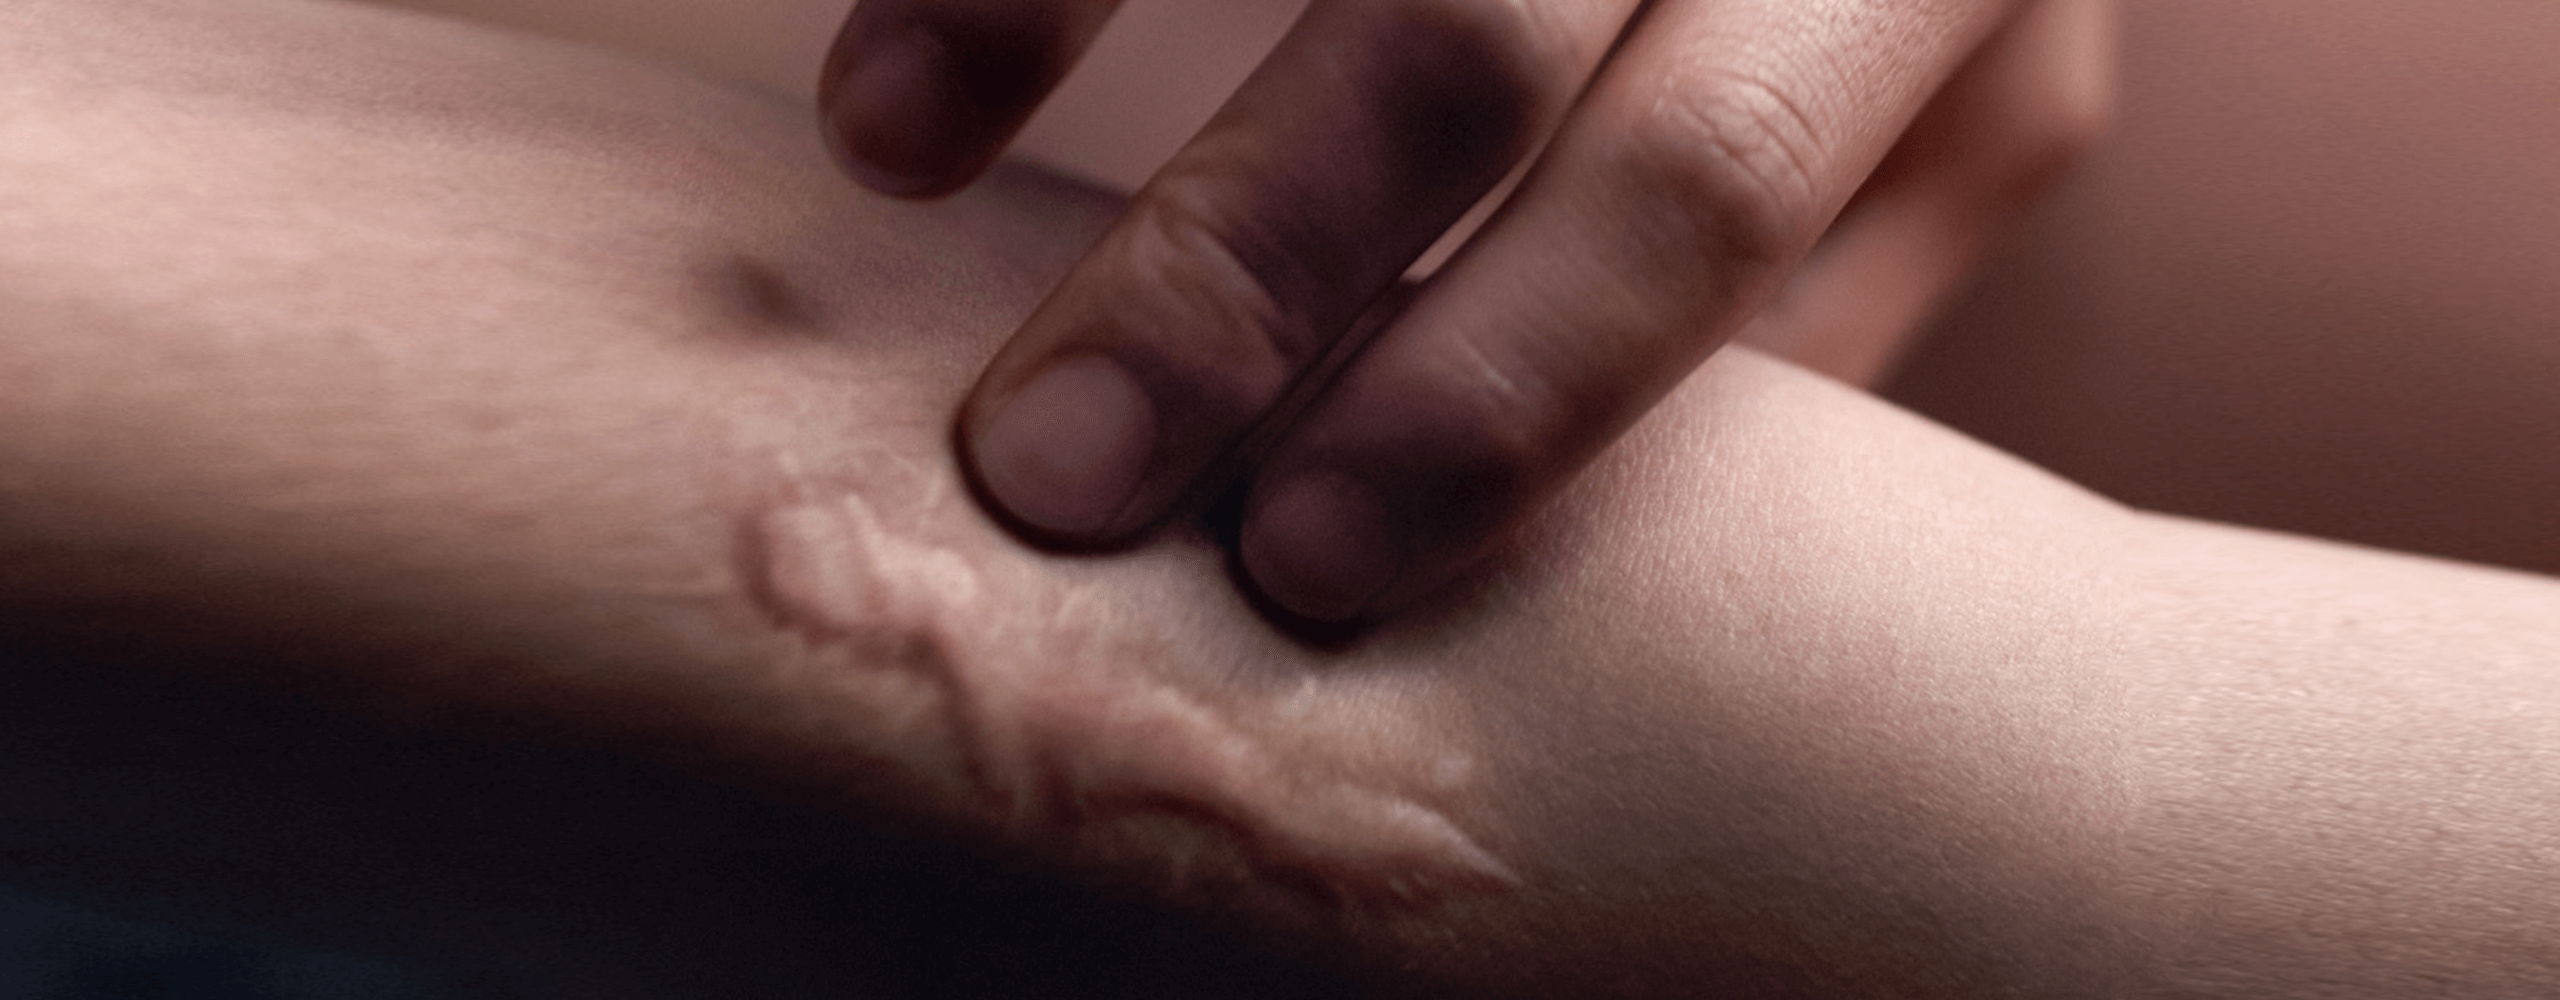 Cómo Es La Cicatriz De La Abdominoplastia O Cirugía De Abdomen